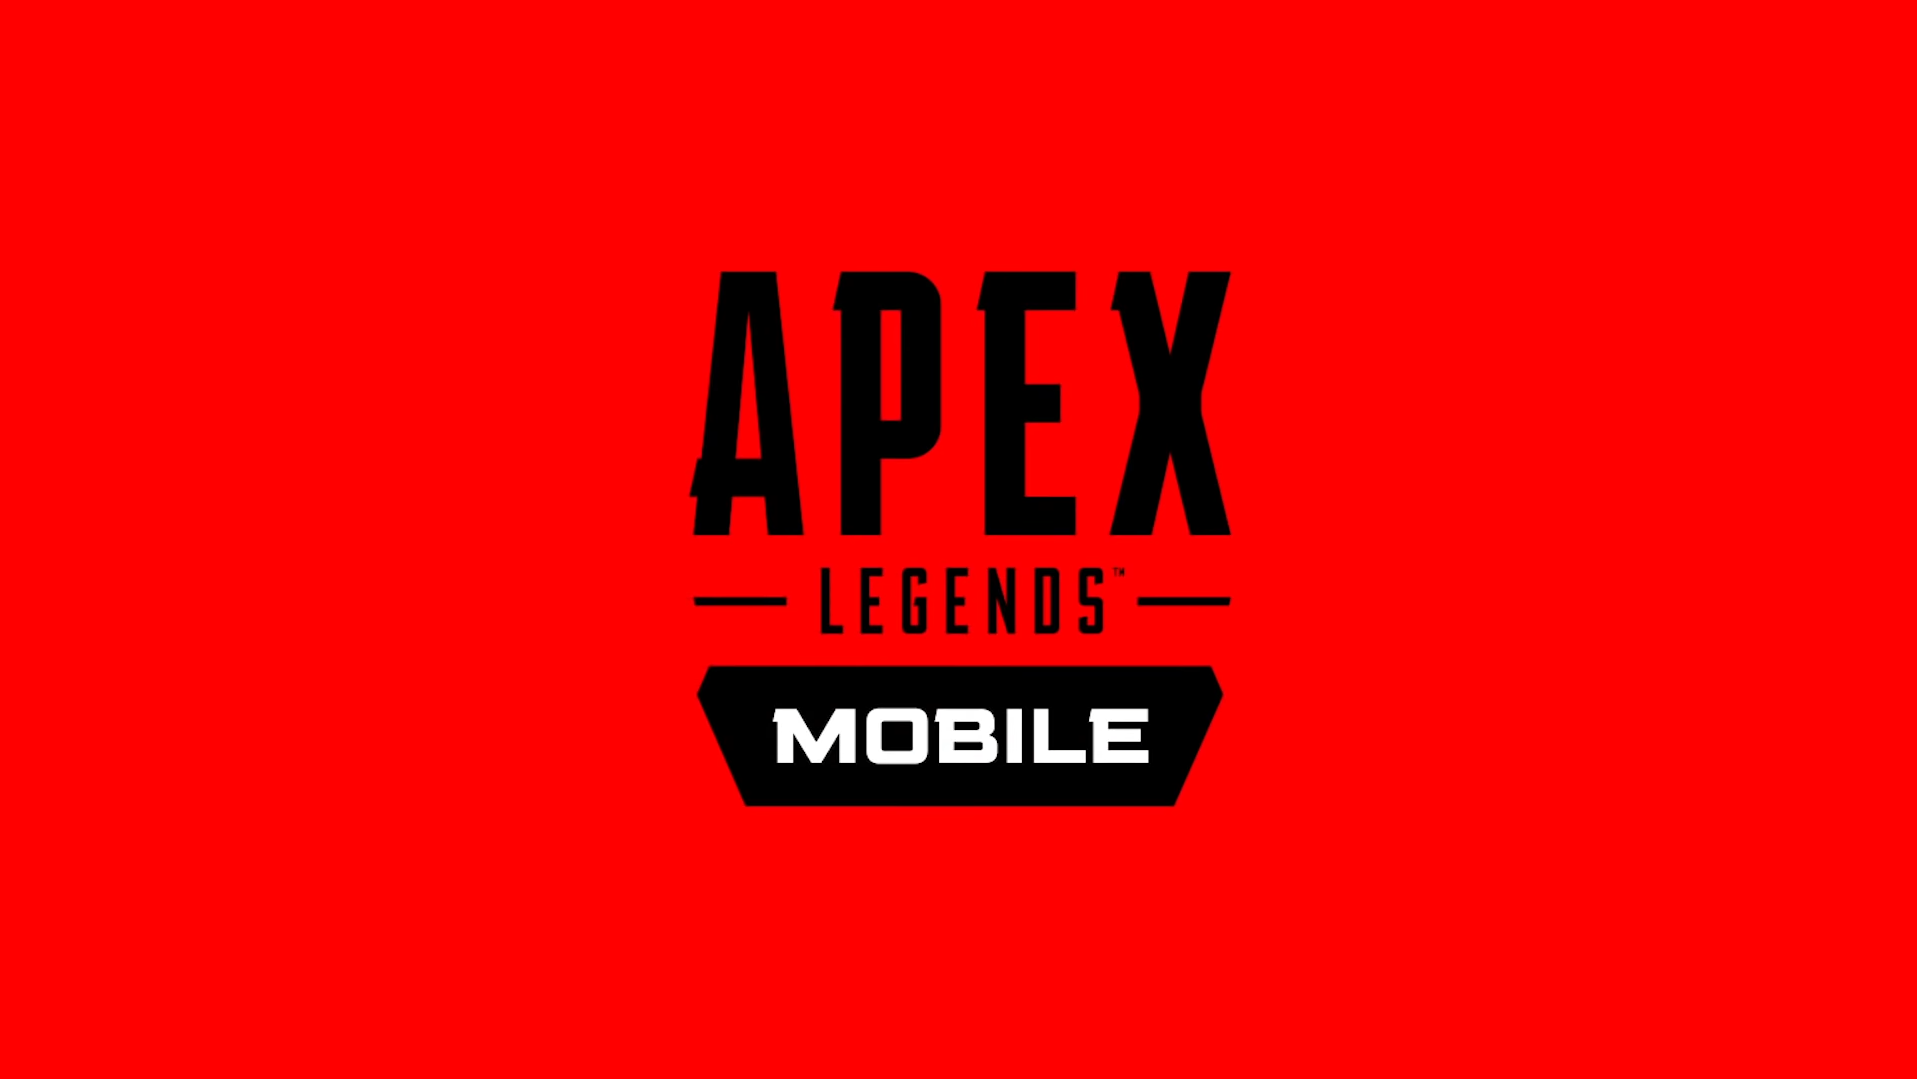 Apex Legends モバイル版はいつから エーペックスレジェンズ